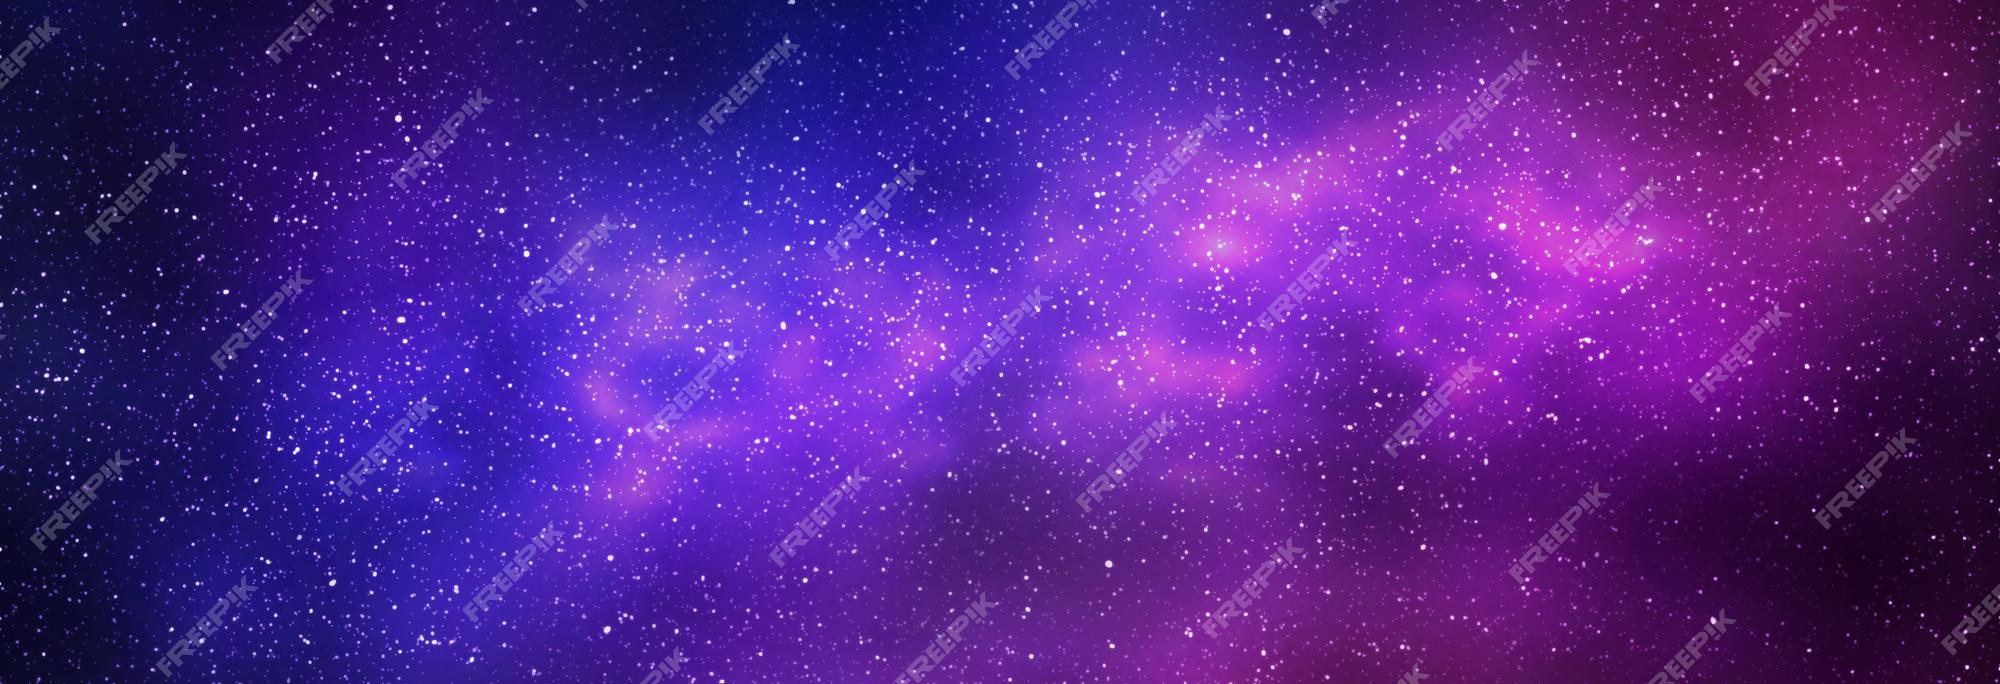 Nếu bạn muốn tìm một bức tranh đêm đầy sao và thiên hà tím xanh sáng đưa bạn như du hành vào vũ trụ, thì đây chính là hình ảnh mà bạn đang tìm kiếm. Bạn sẽ ngỡ ngàng và mơ mộng với những điều kỳ diệu này.